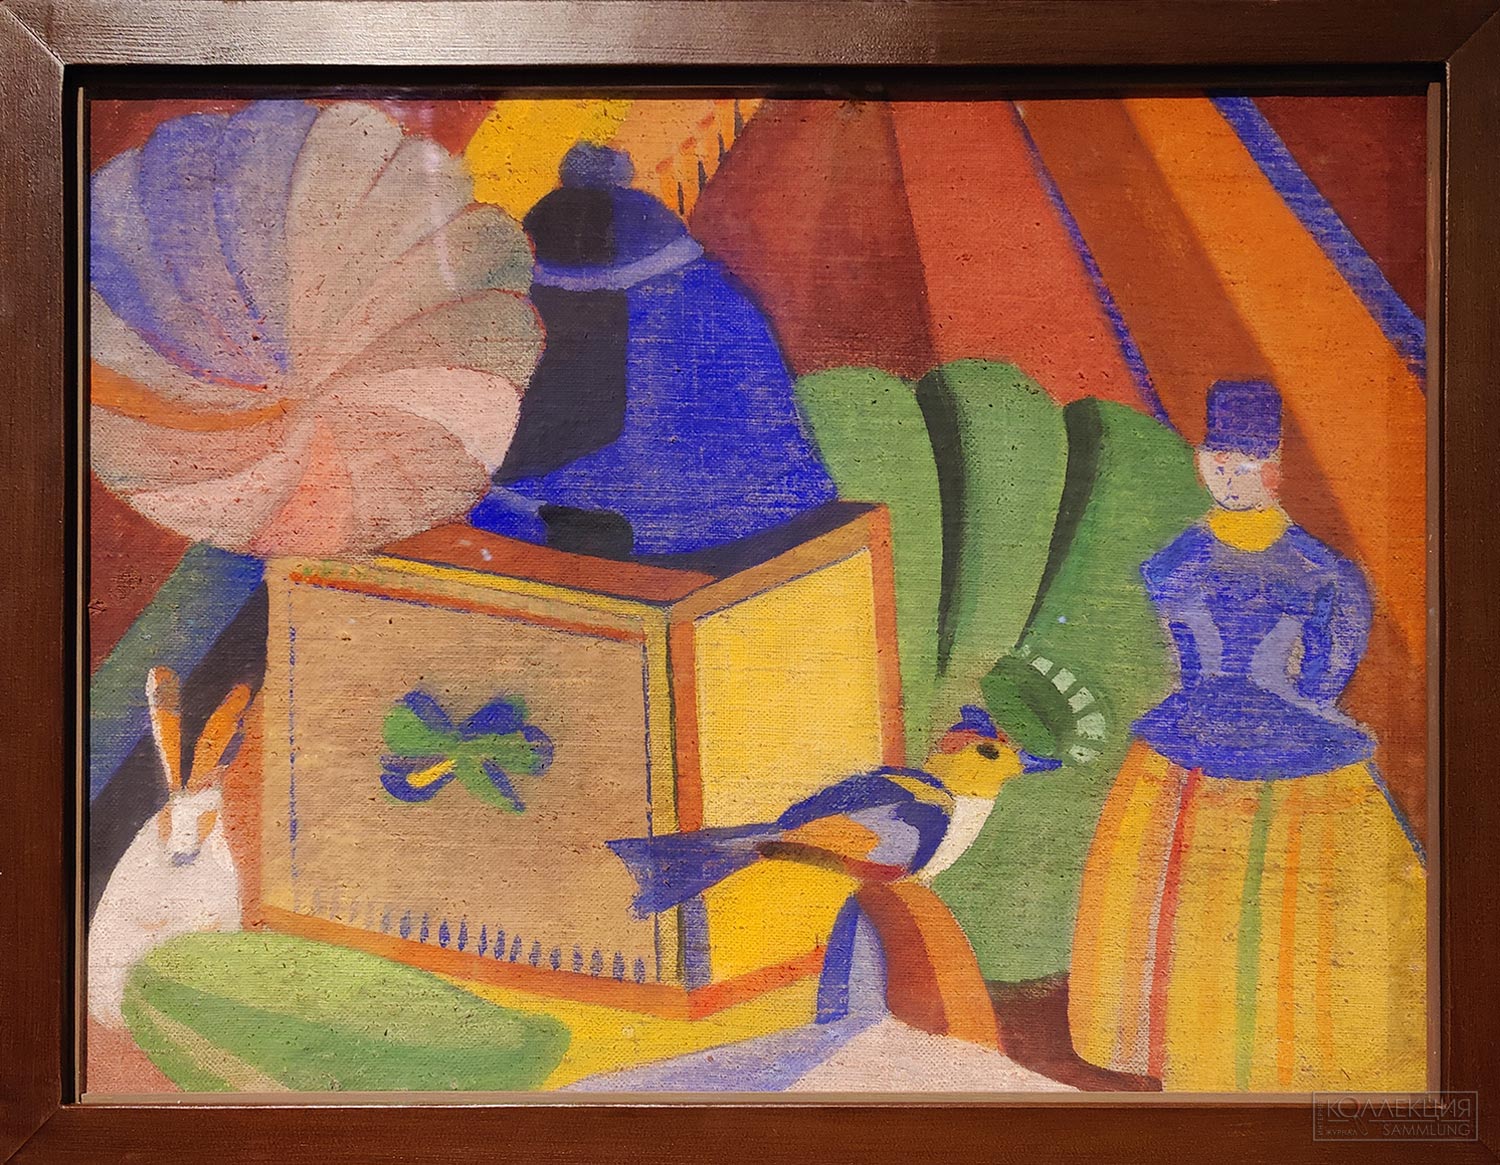 Неизвестный художник. Натюрморт с игрушками. 1920-е. Пермская государственная художественная галерея